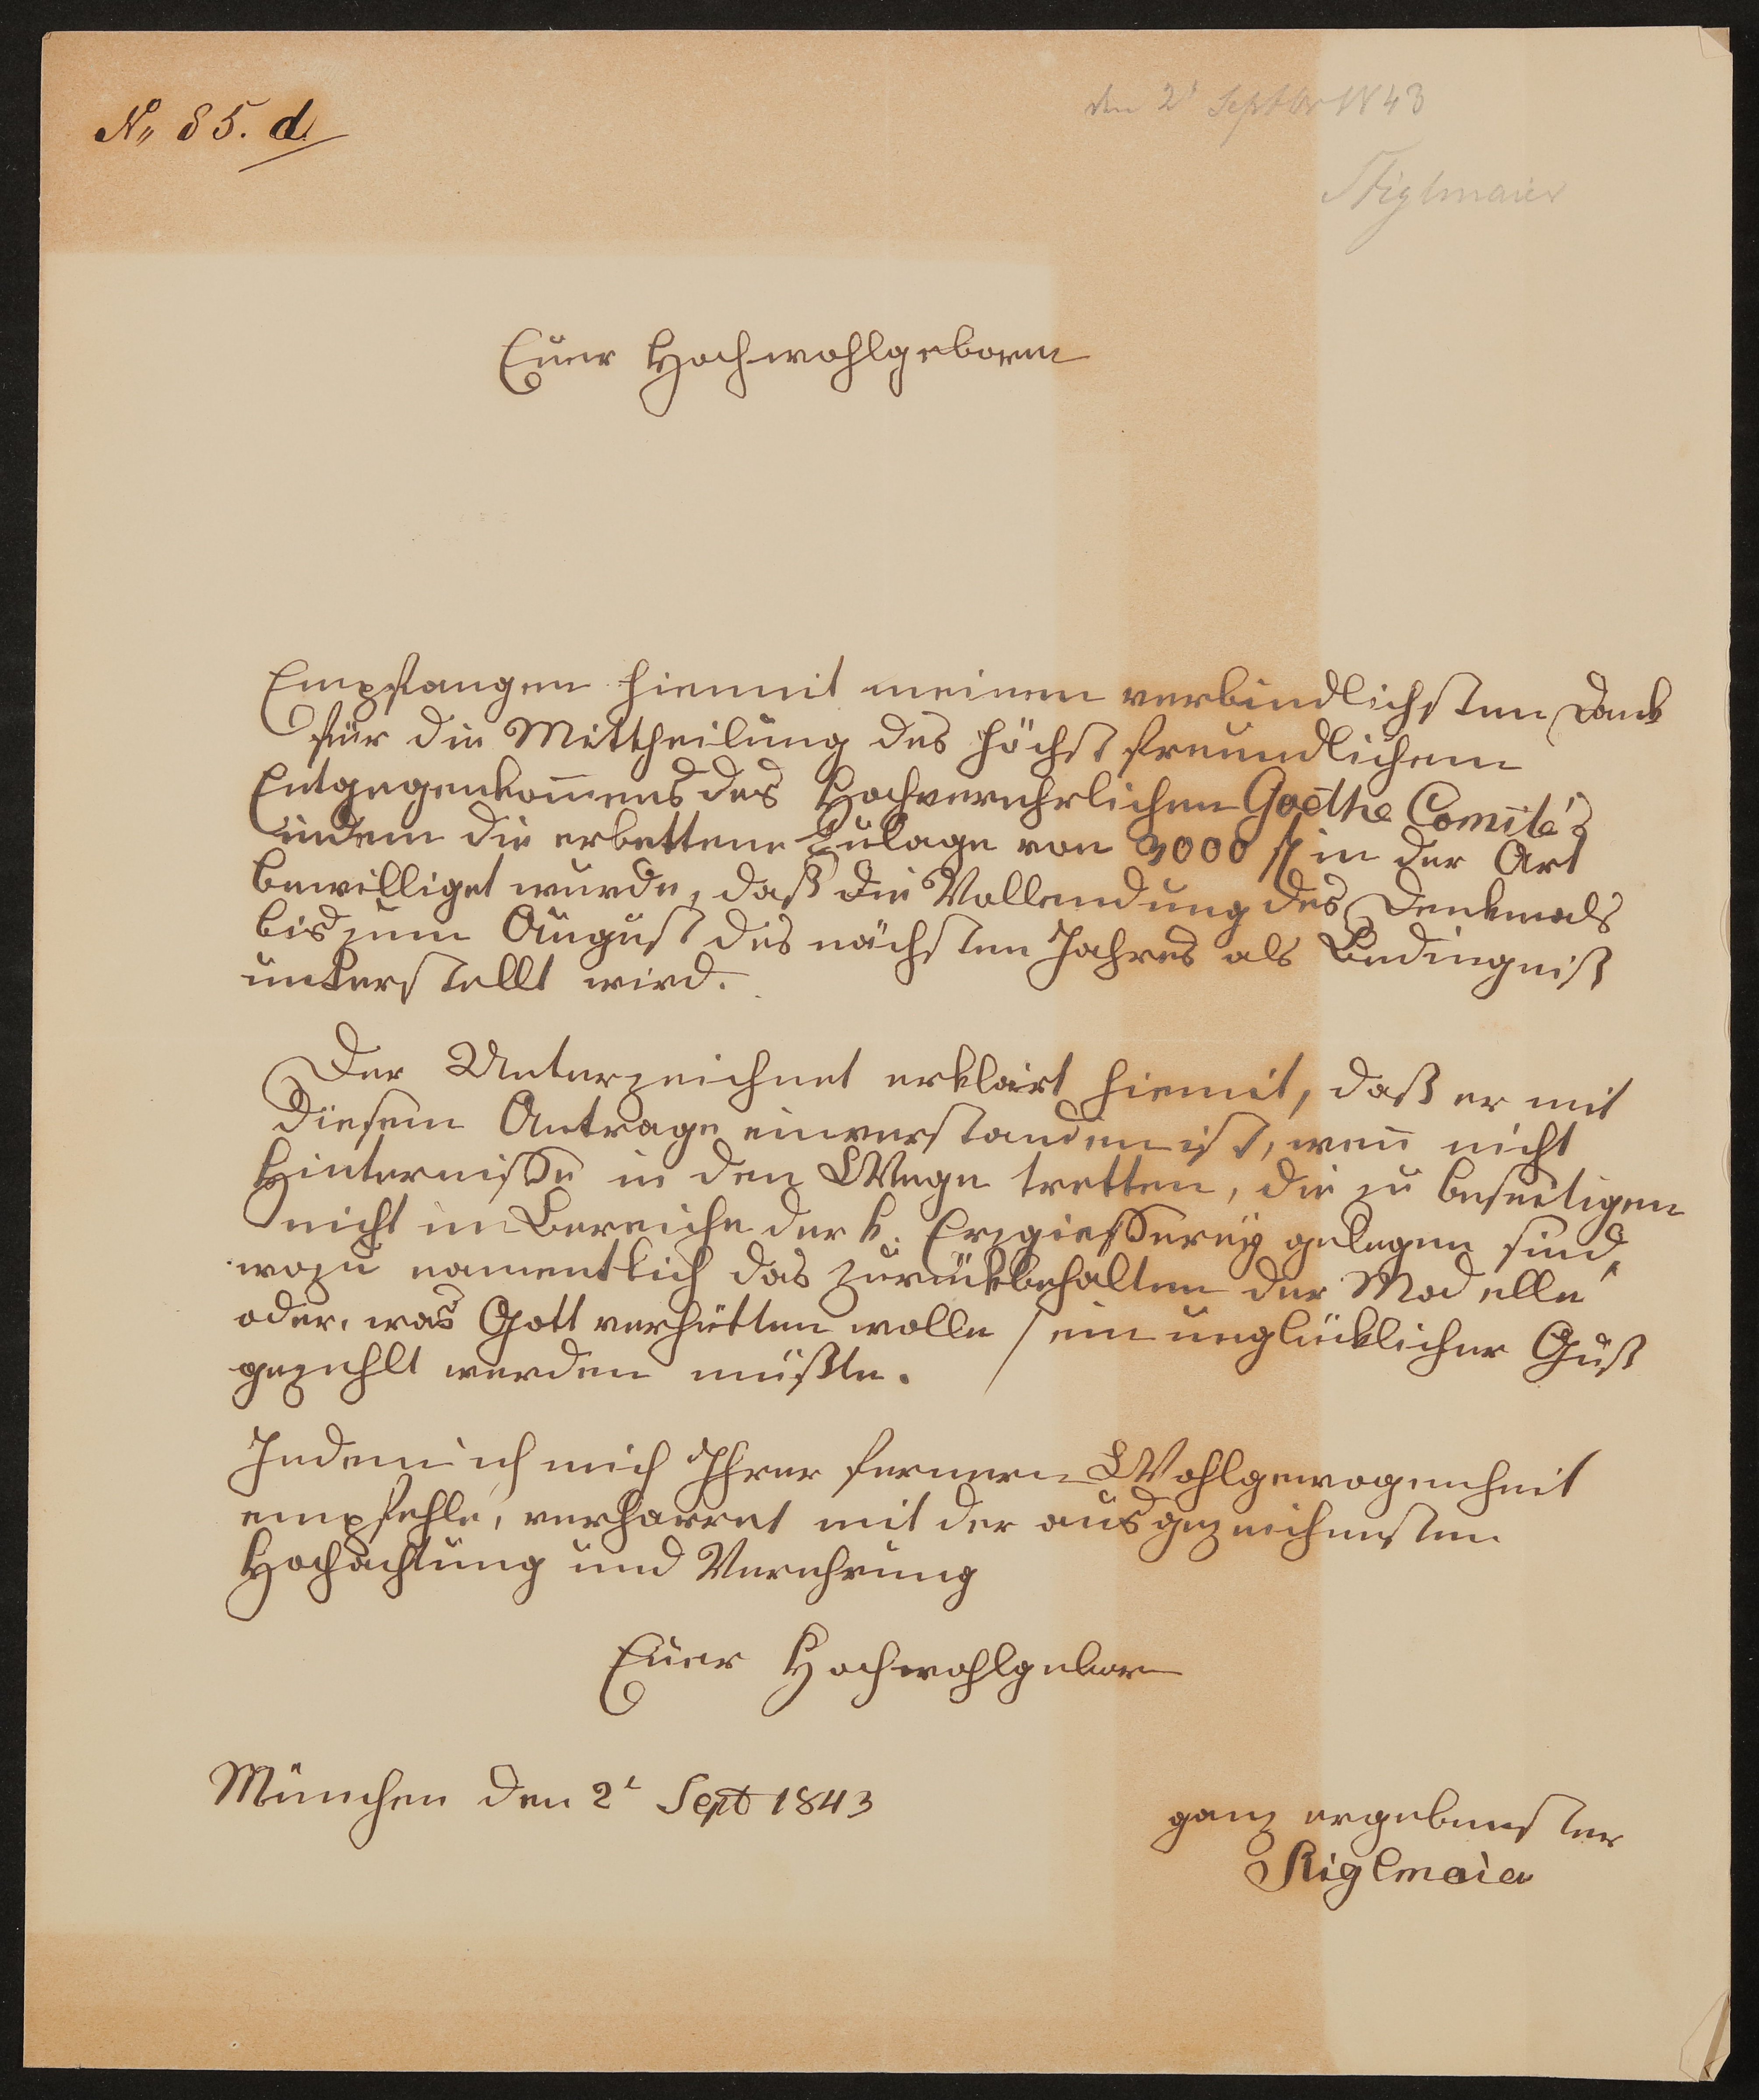 Brief von Johann Baptist Stiglmaier an Friedrich John (?) / Comité für Errichtung des Goetheschen Denkmals vom 02.09.1843 (Freies Deutsches Hochstift / Frankfurter Goethe-Museum Public Domain Mark)